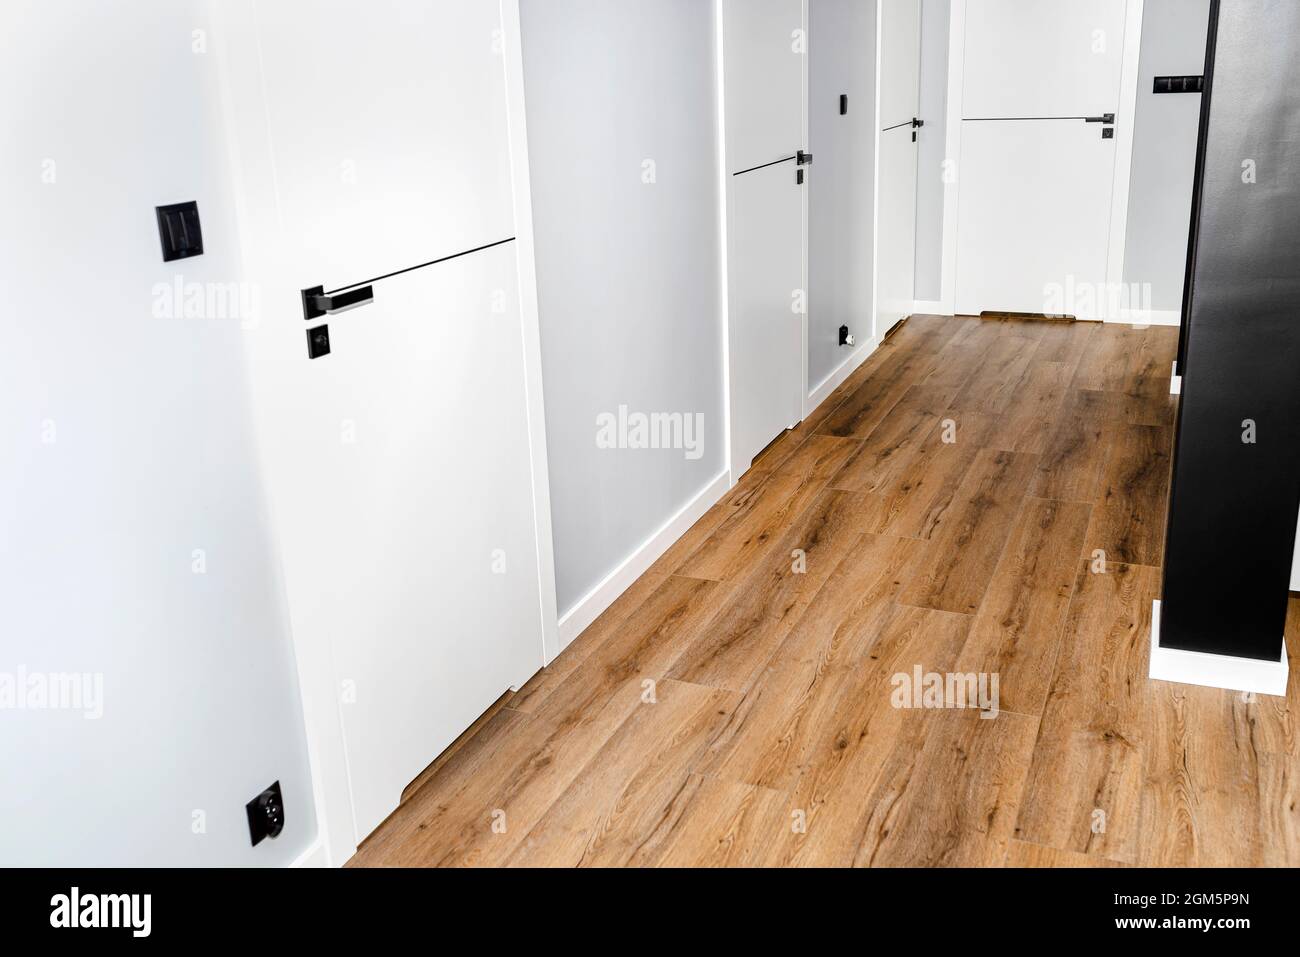 Une porte blanche avec un dégagement de ventilation avec une poignée noire  mate et une ligne noire au milieu dans une maison moderne avec des panneaux  en vinyle sur le plancher Photo